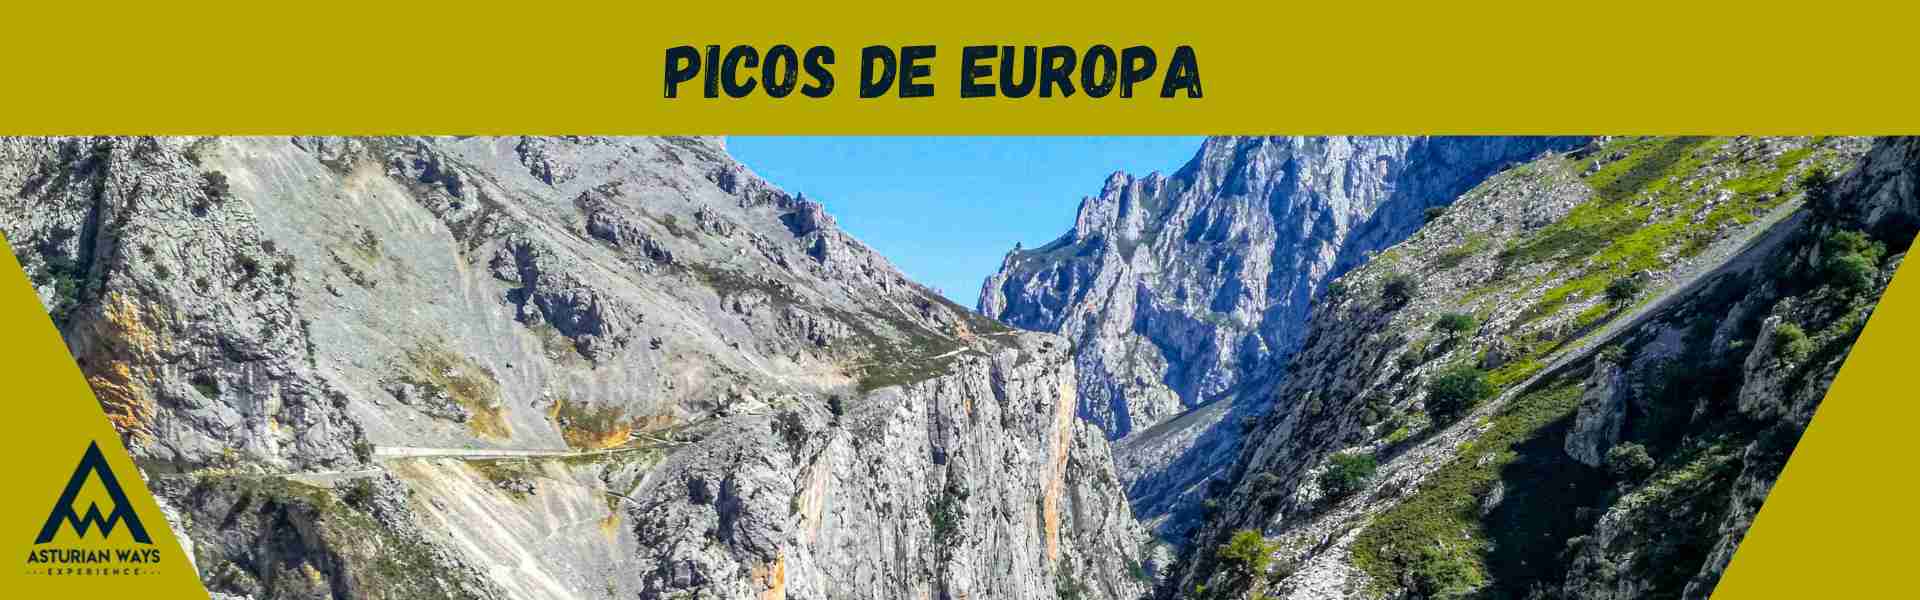 Escapada a Picos de Europa